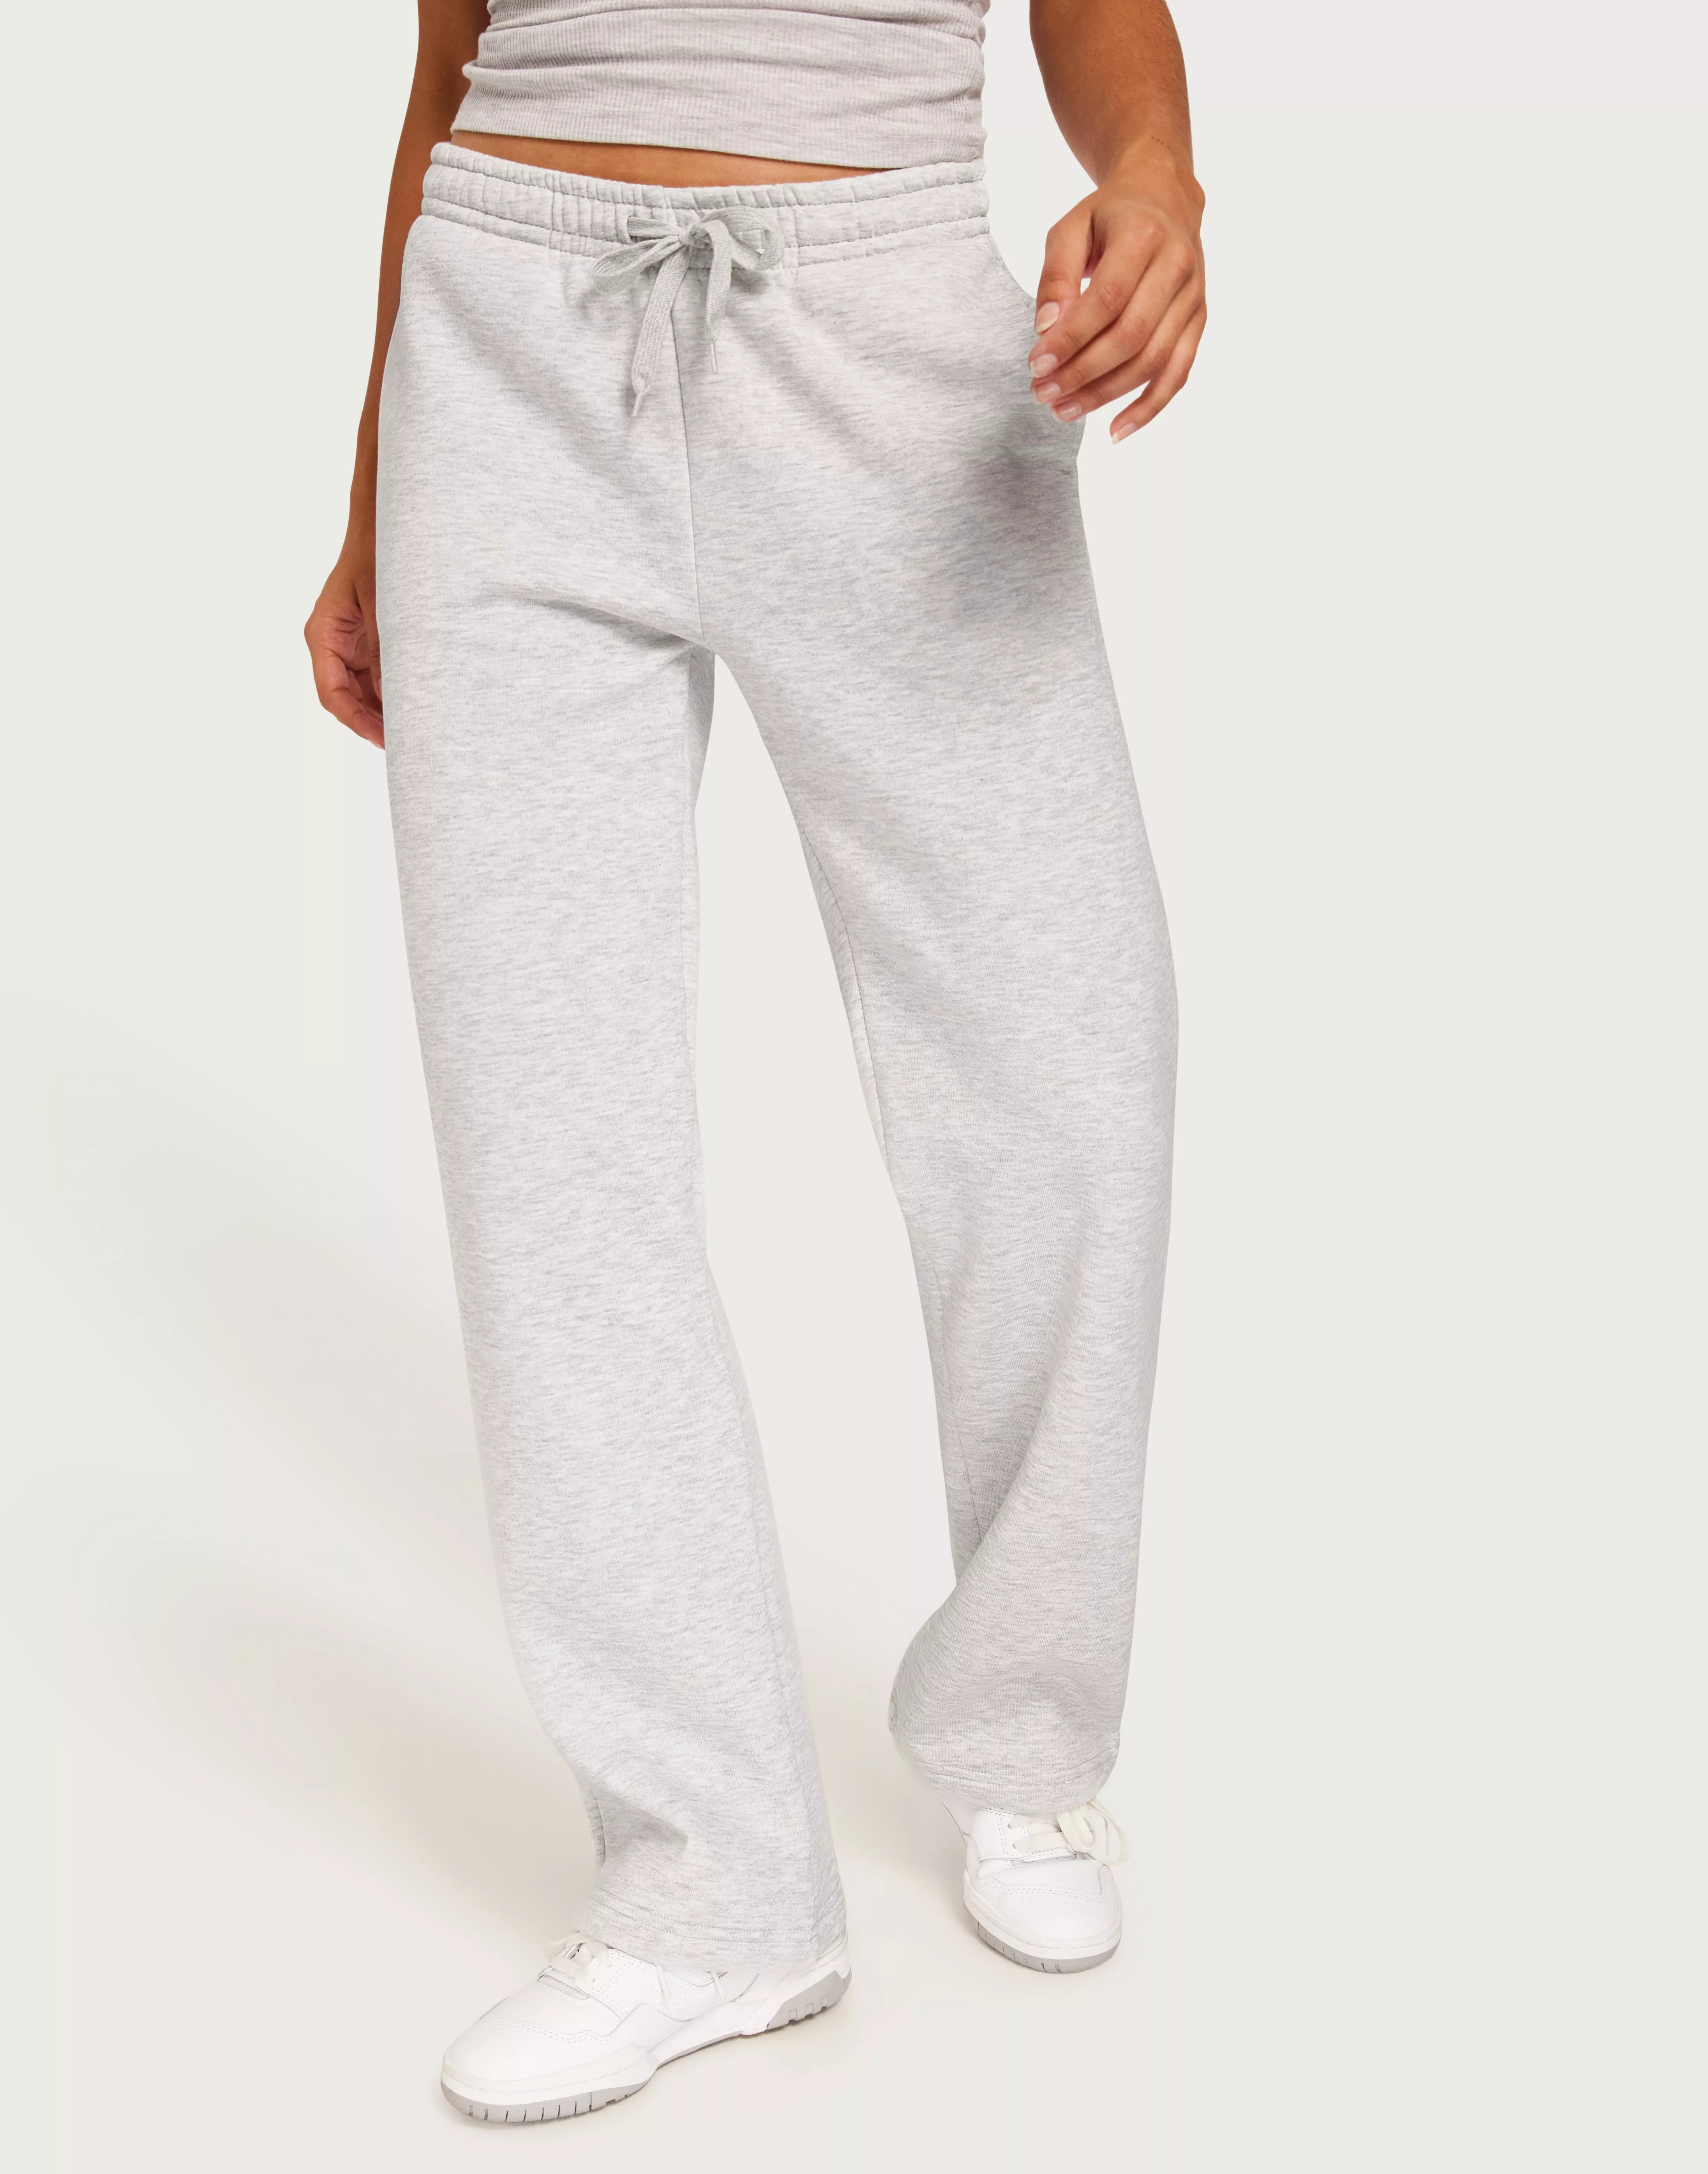 Buy Gina Tricot Basic Straight Sweatpants - Light Grey Melange